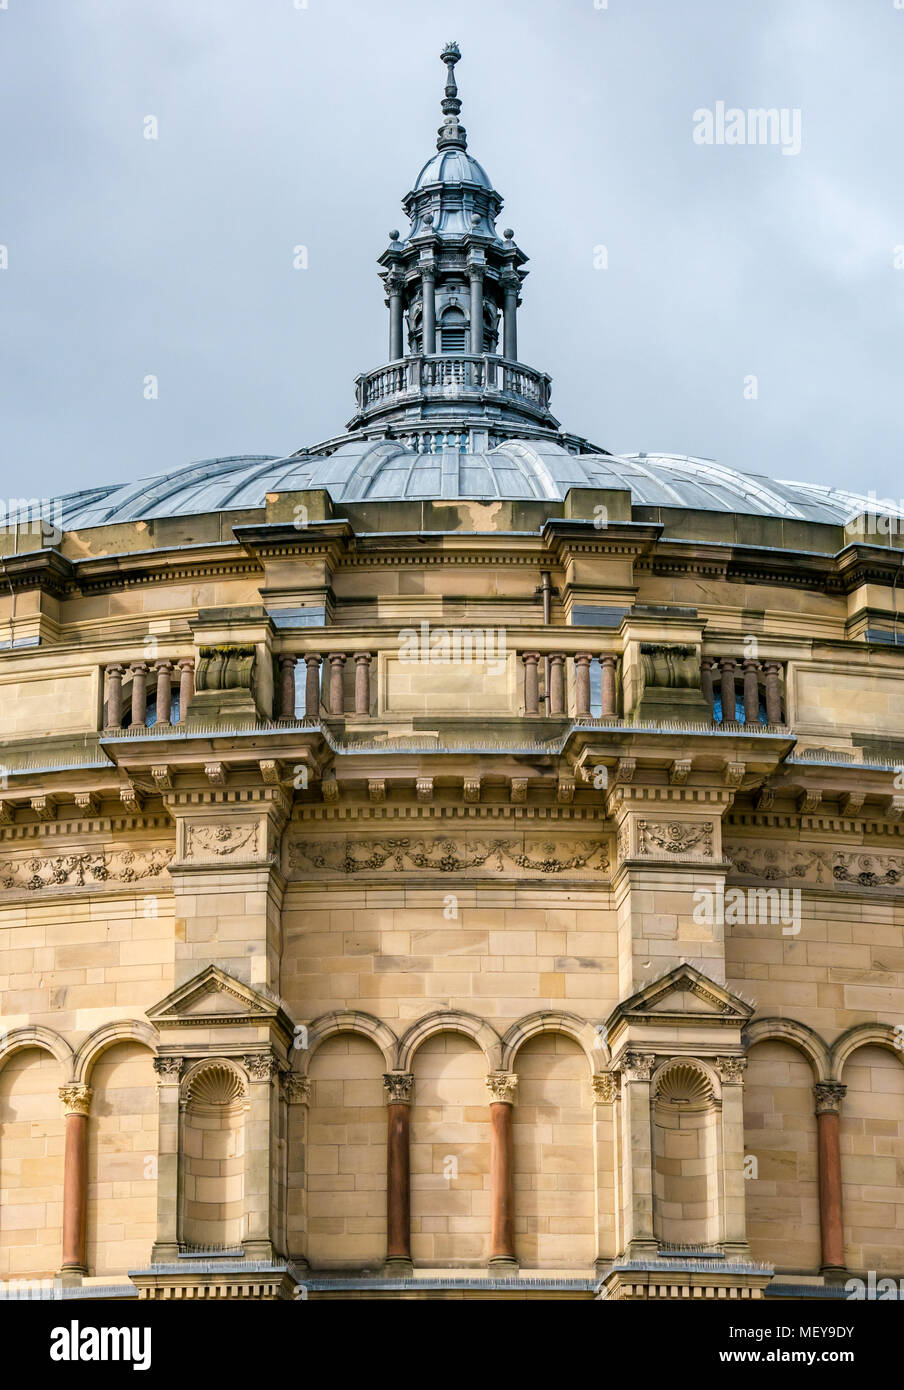 Vue sur le grand toit rond bombé et la flèche du McEwan Hall, salle de remise des diplômes de l'Université d'Édimbourg, Edimbourg, Écosse, Royaume-Uni Banque D'Images